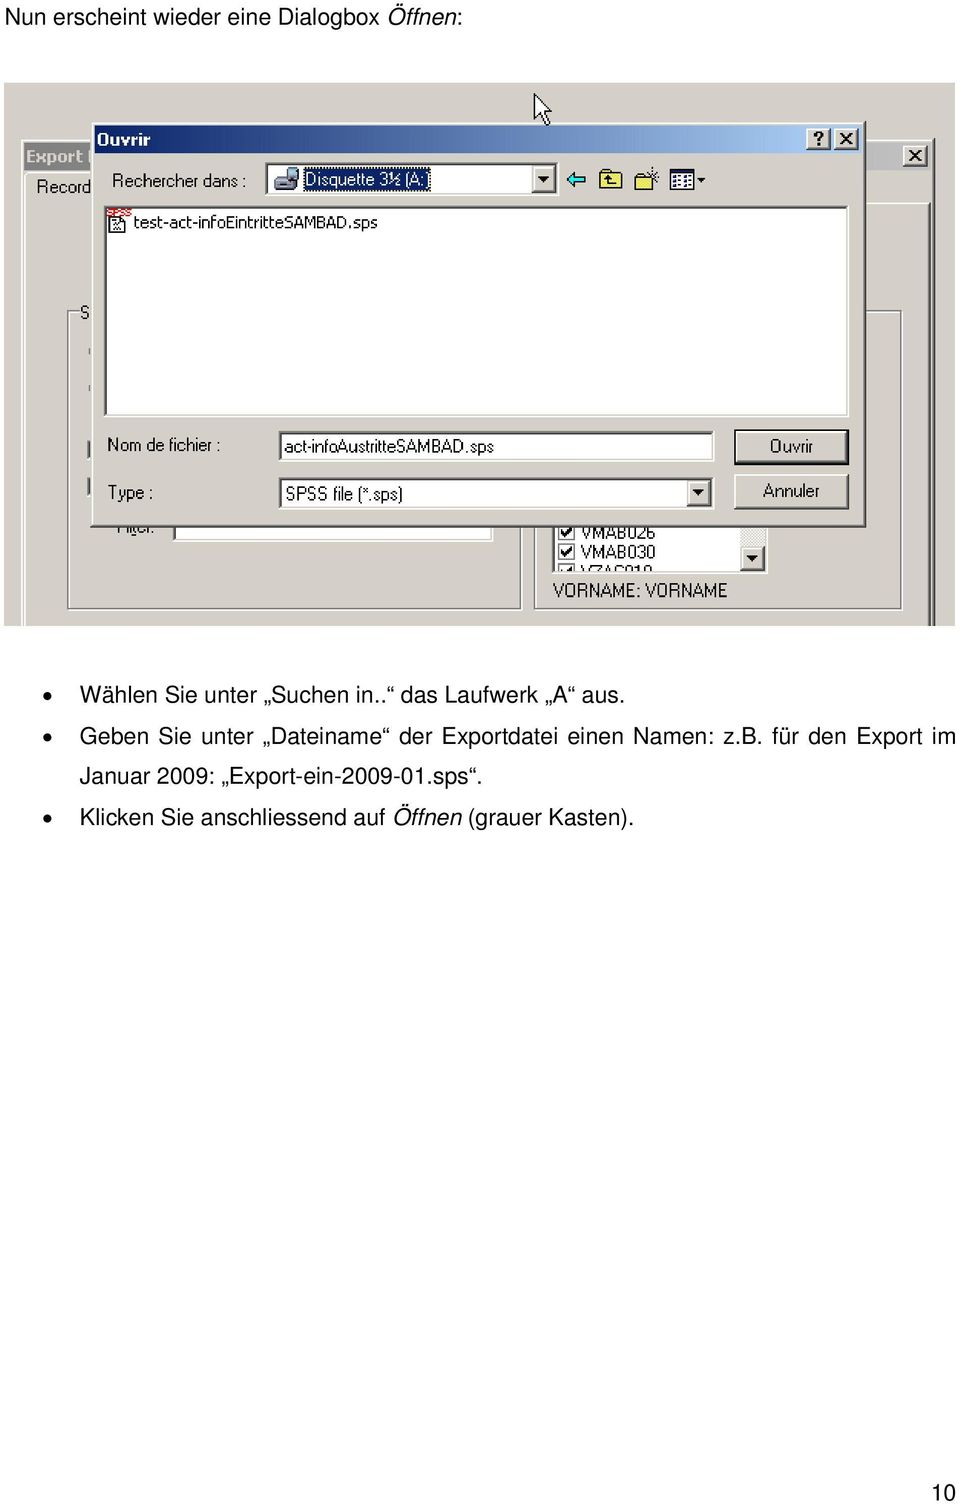 Geben Sie unter Dateiname der Exportdatei einen Namen: z.b. für den Export im Januar 2009: Export-ein-2009-01.